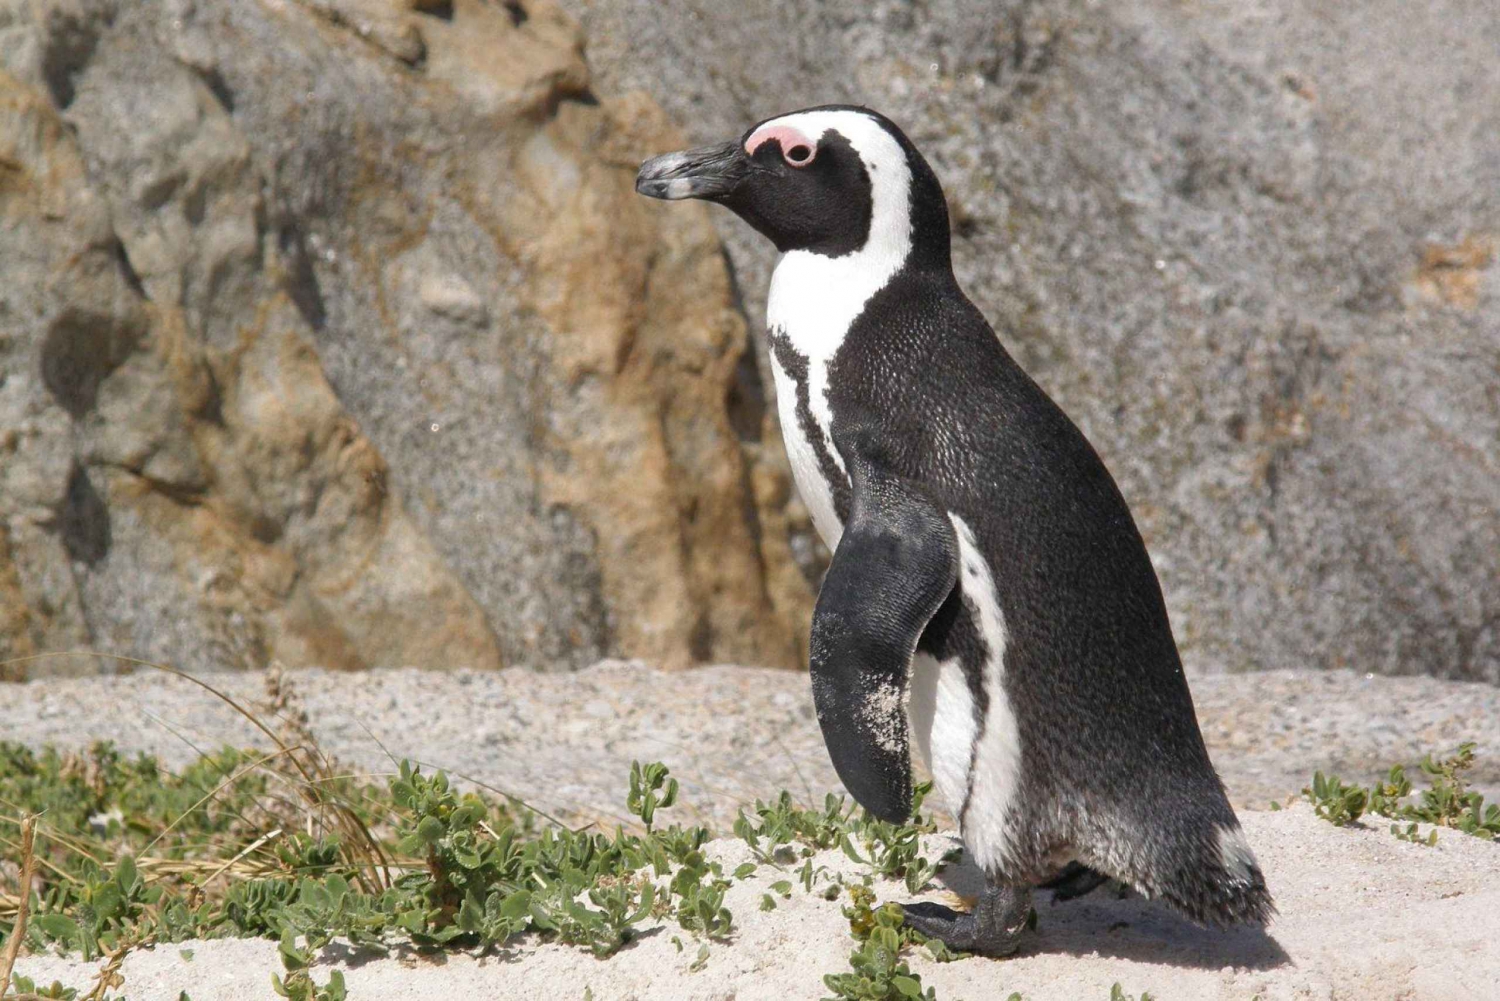 Le Cap : Pointe du Cap, pingouins et dégustation de vin